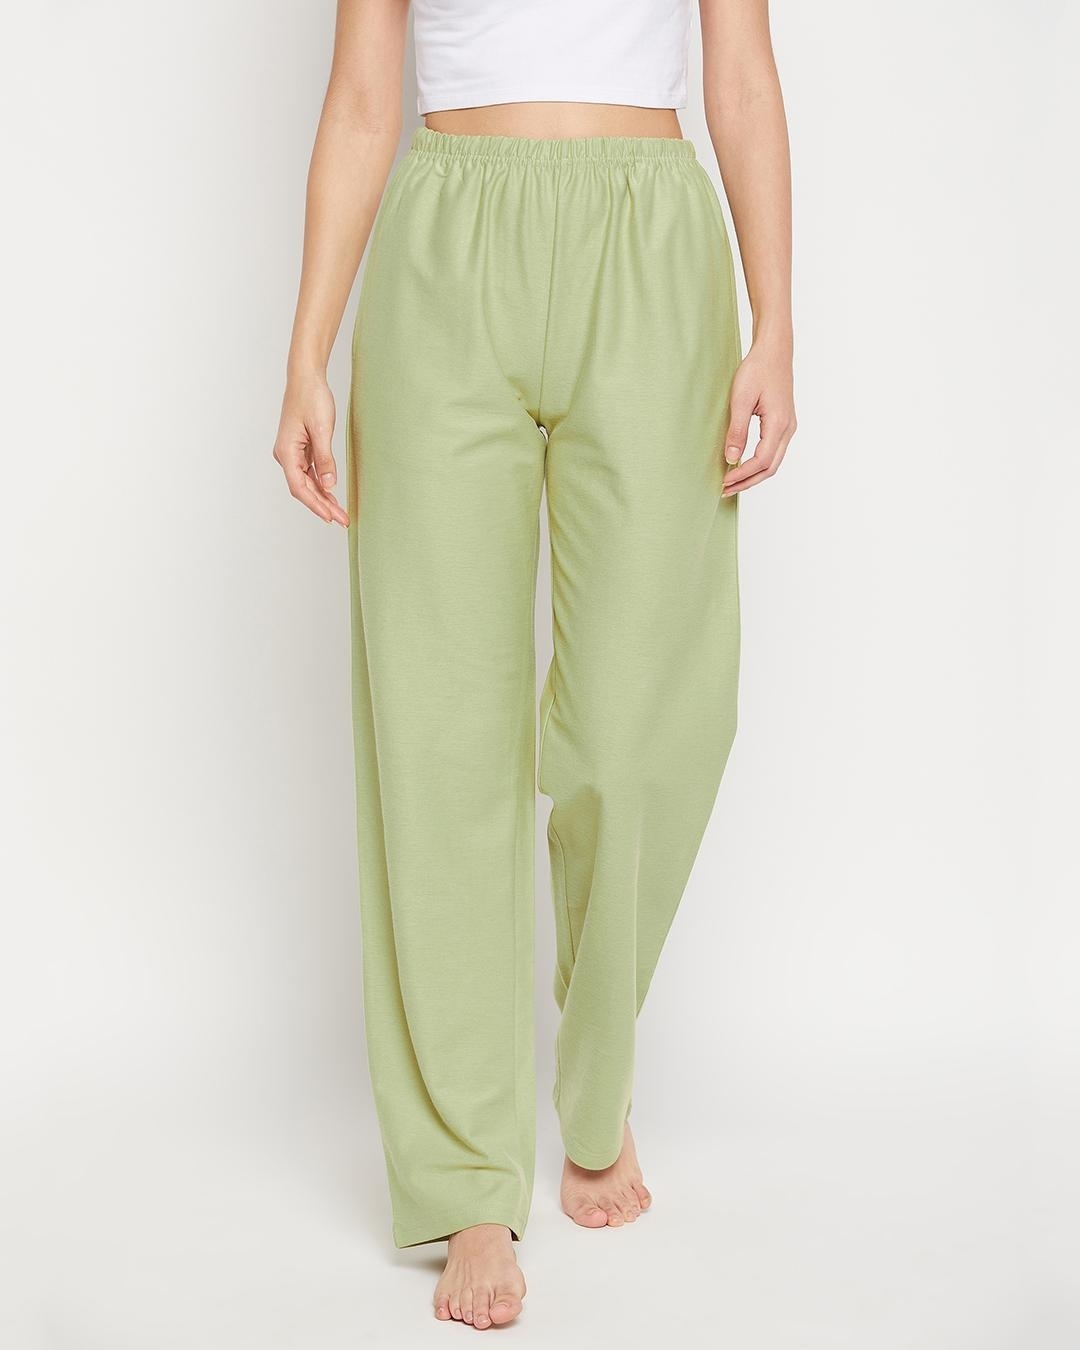 Buy Women's Green Pyjamas Online in India at Bewakoof